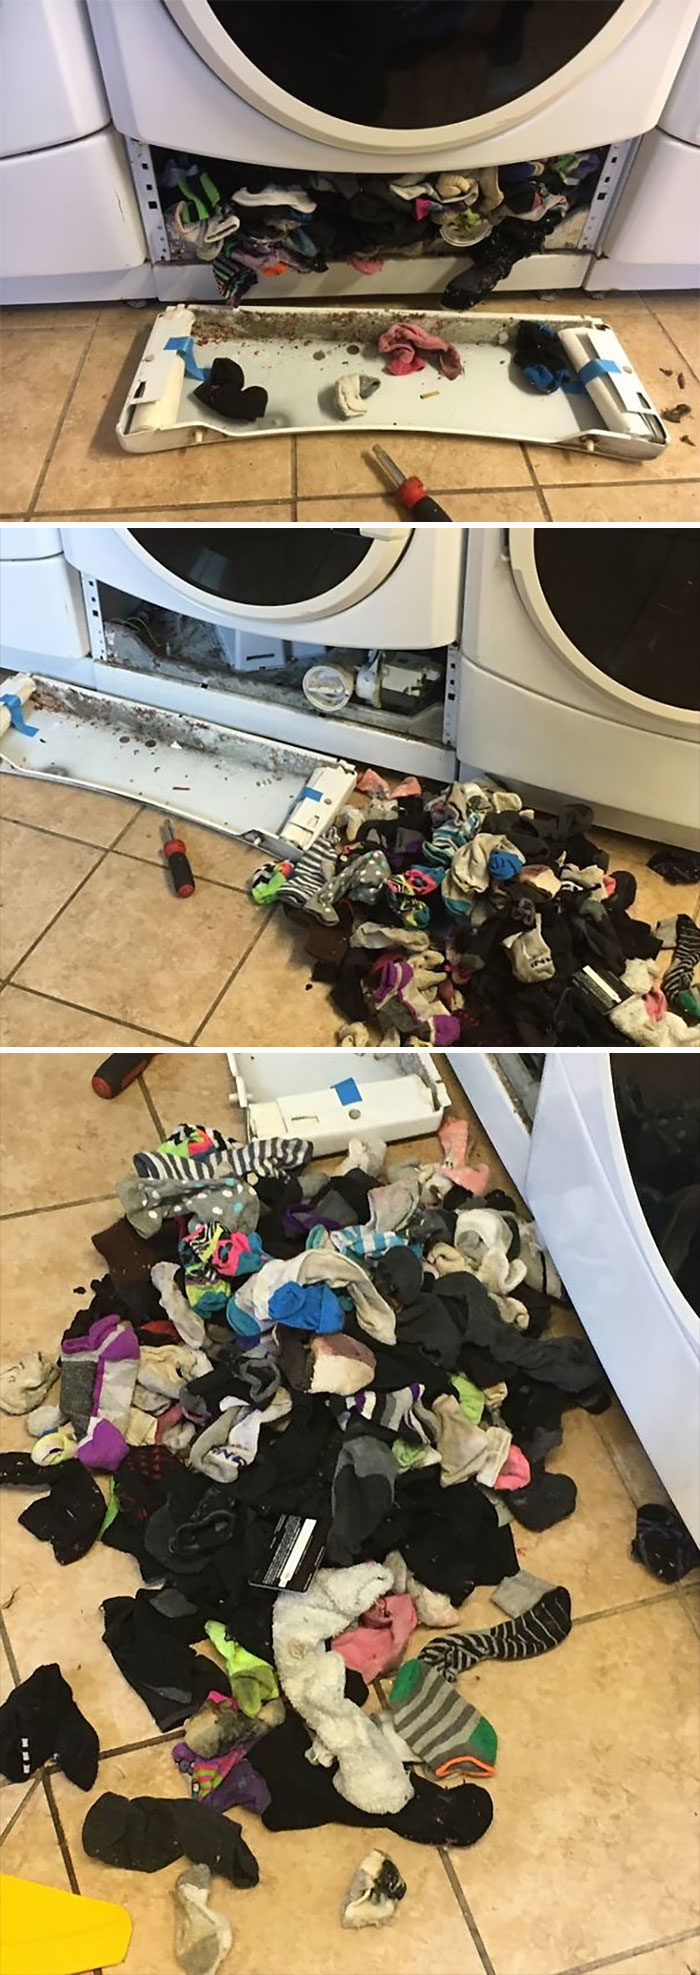 洗衣機悲劇